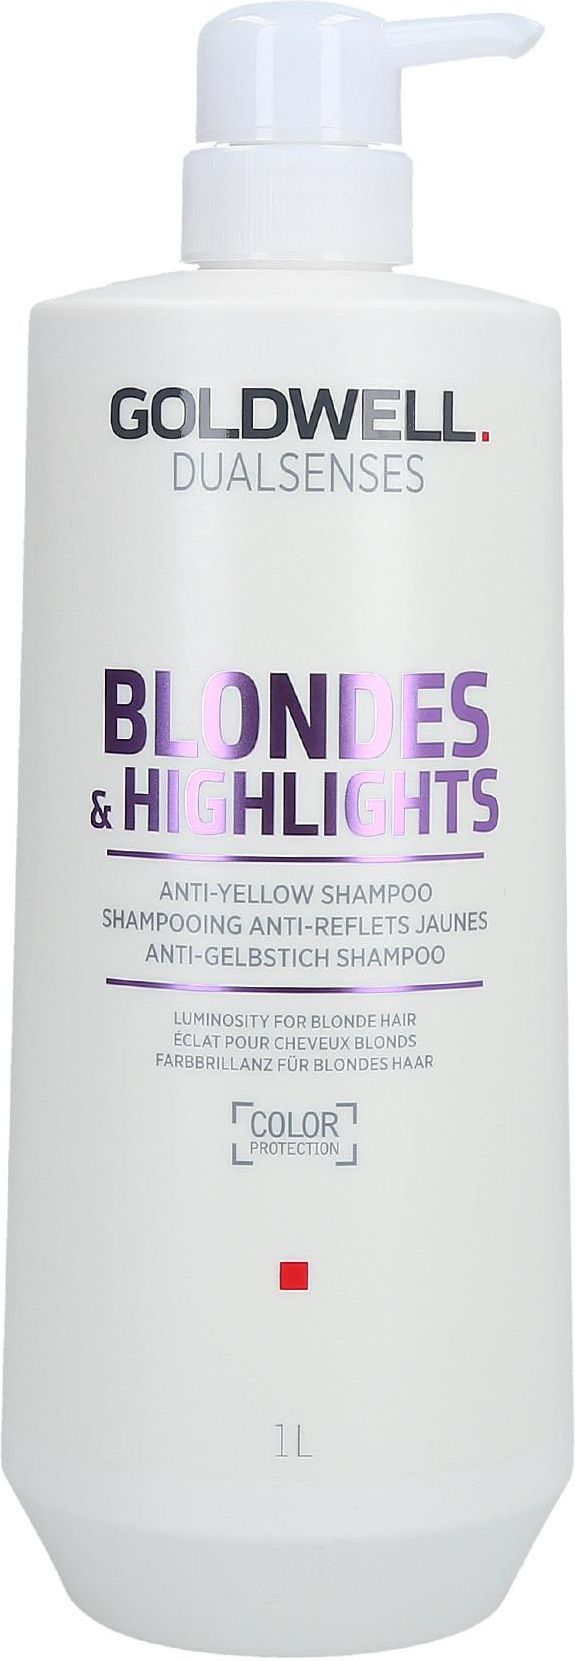 goldwell blondes szampon blonde